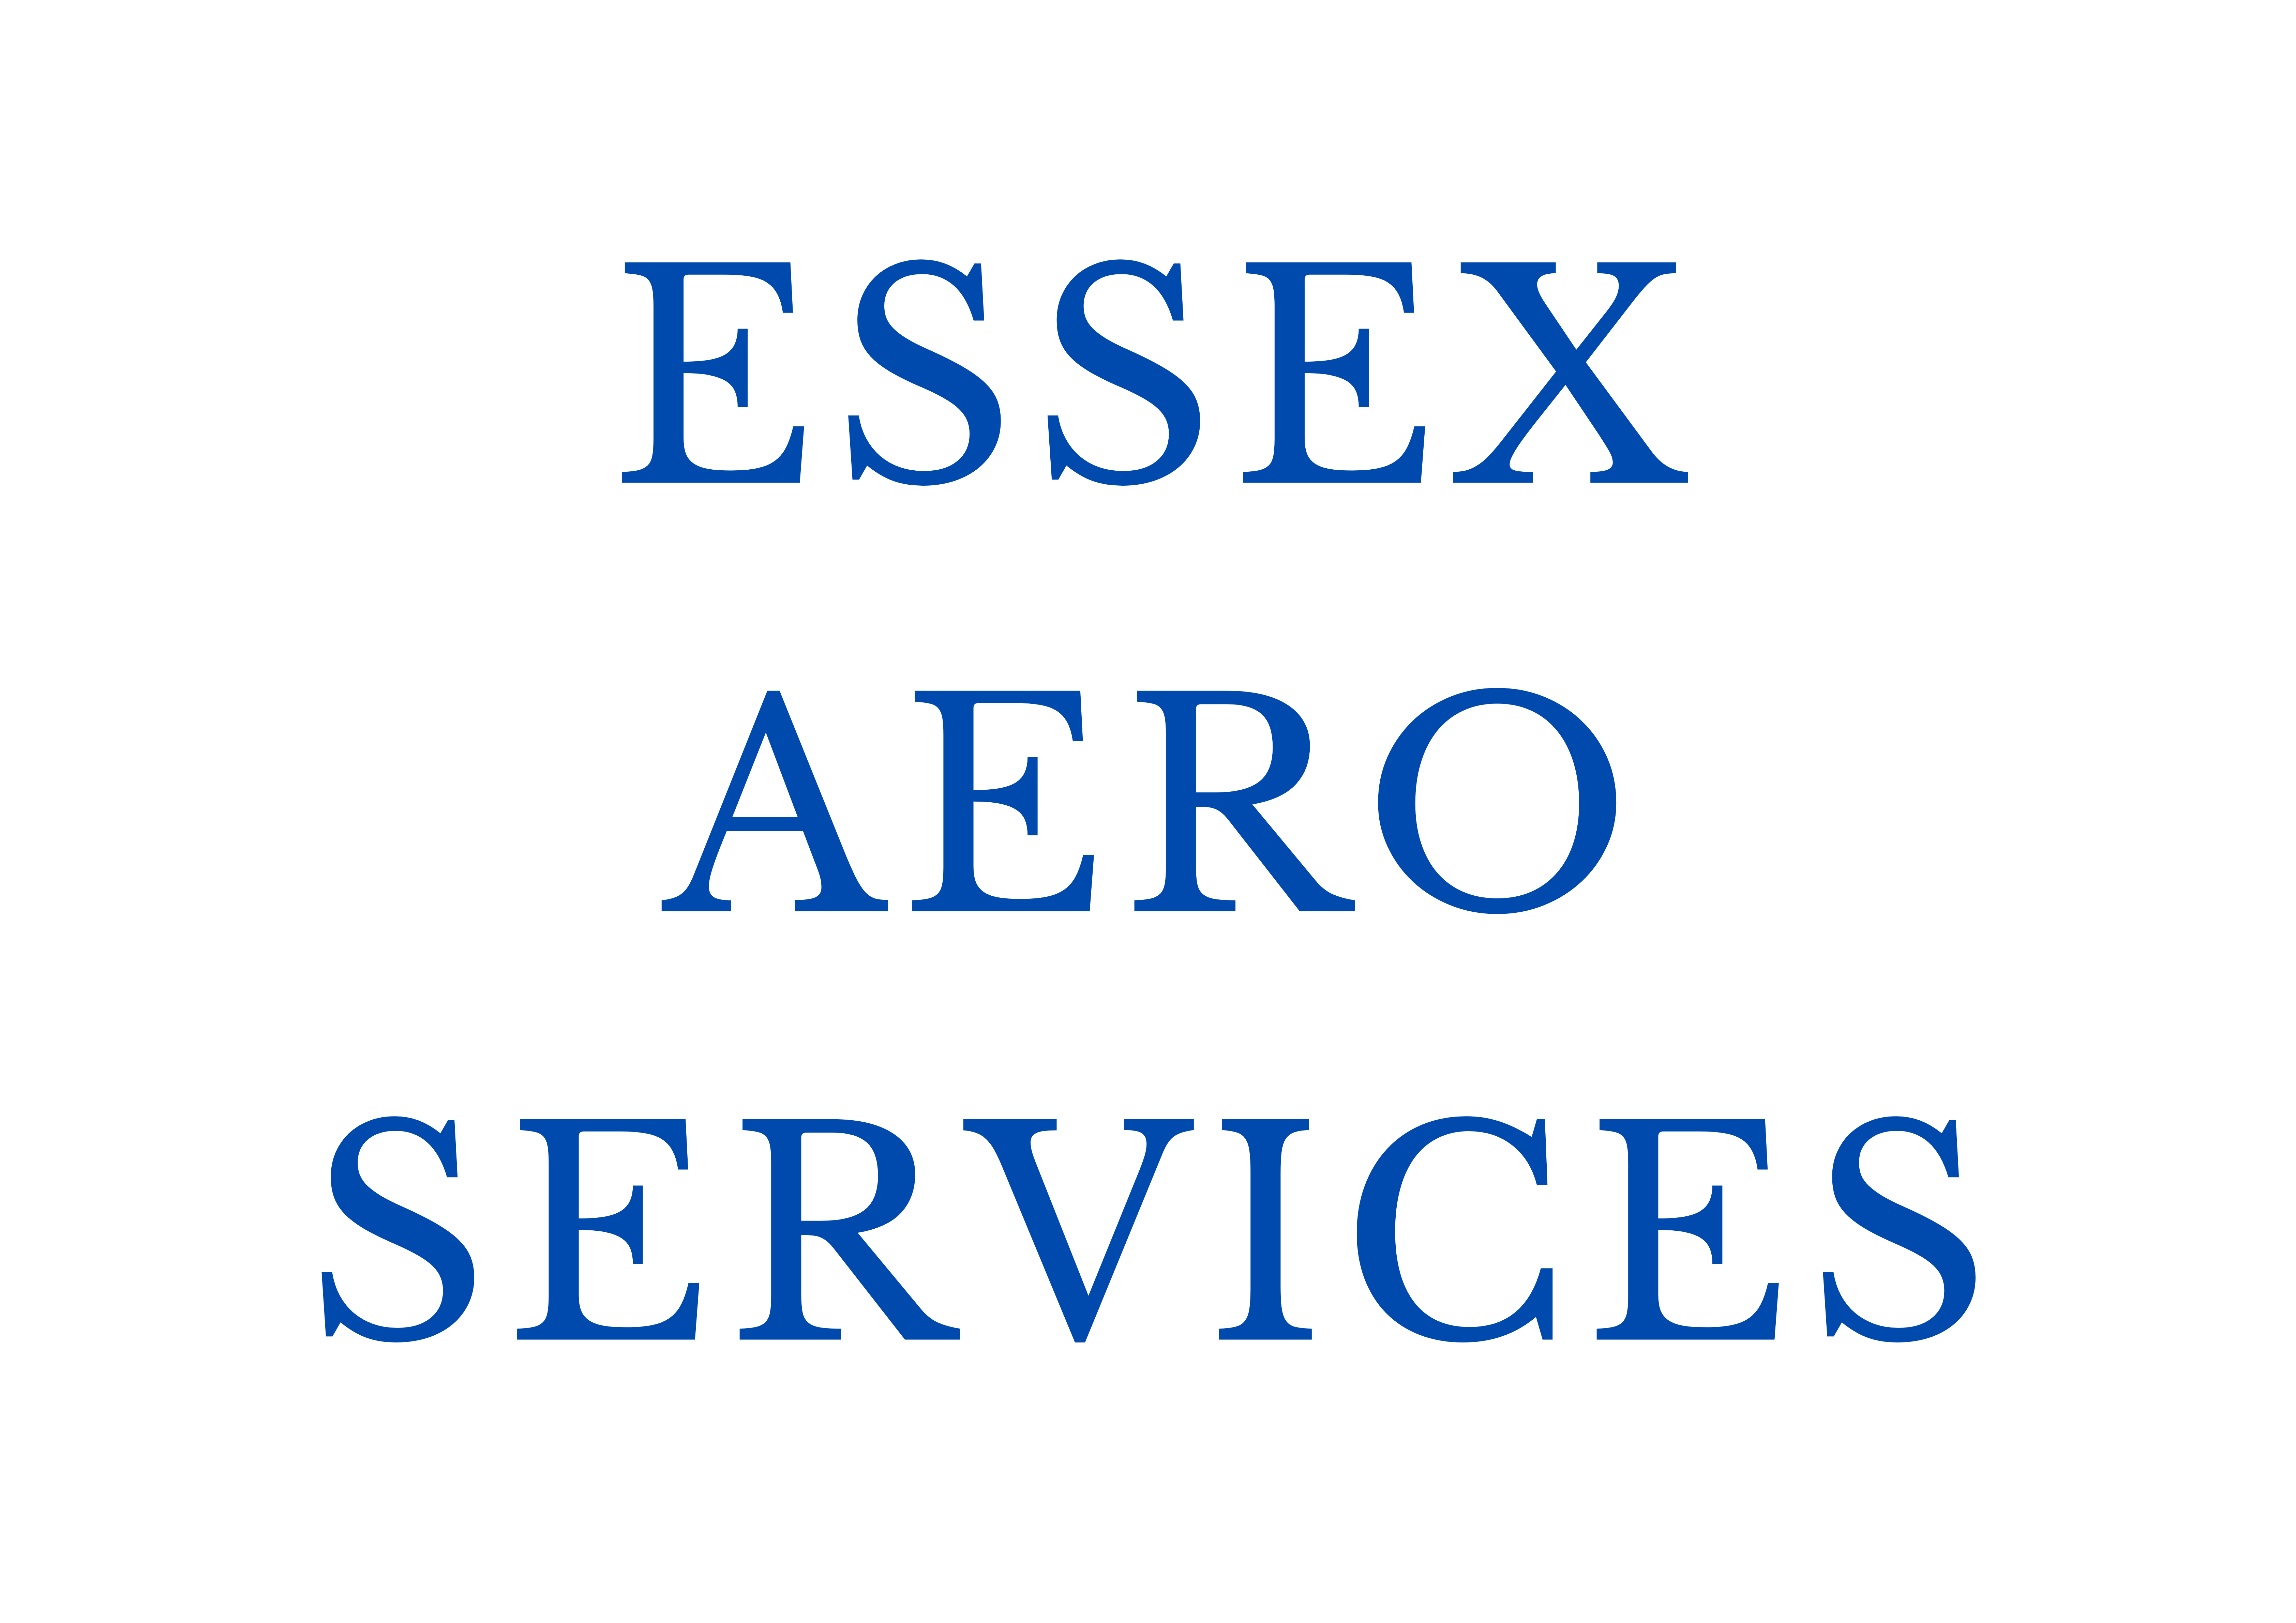 Essex Aero Services, LLC